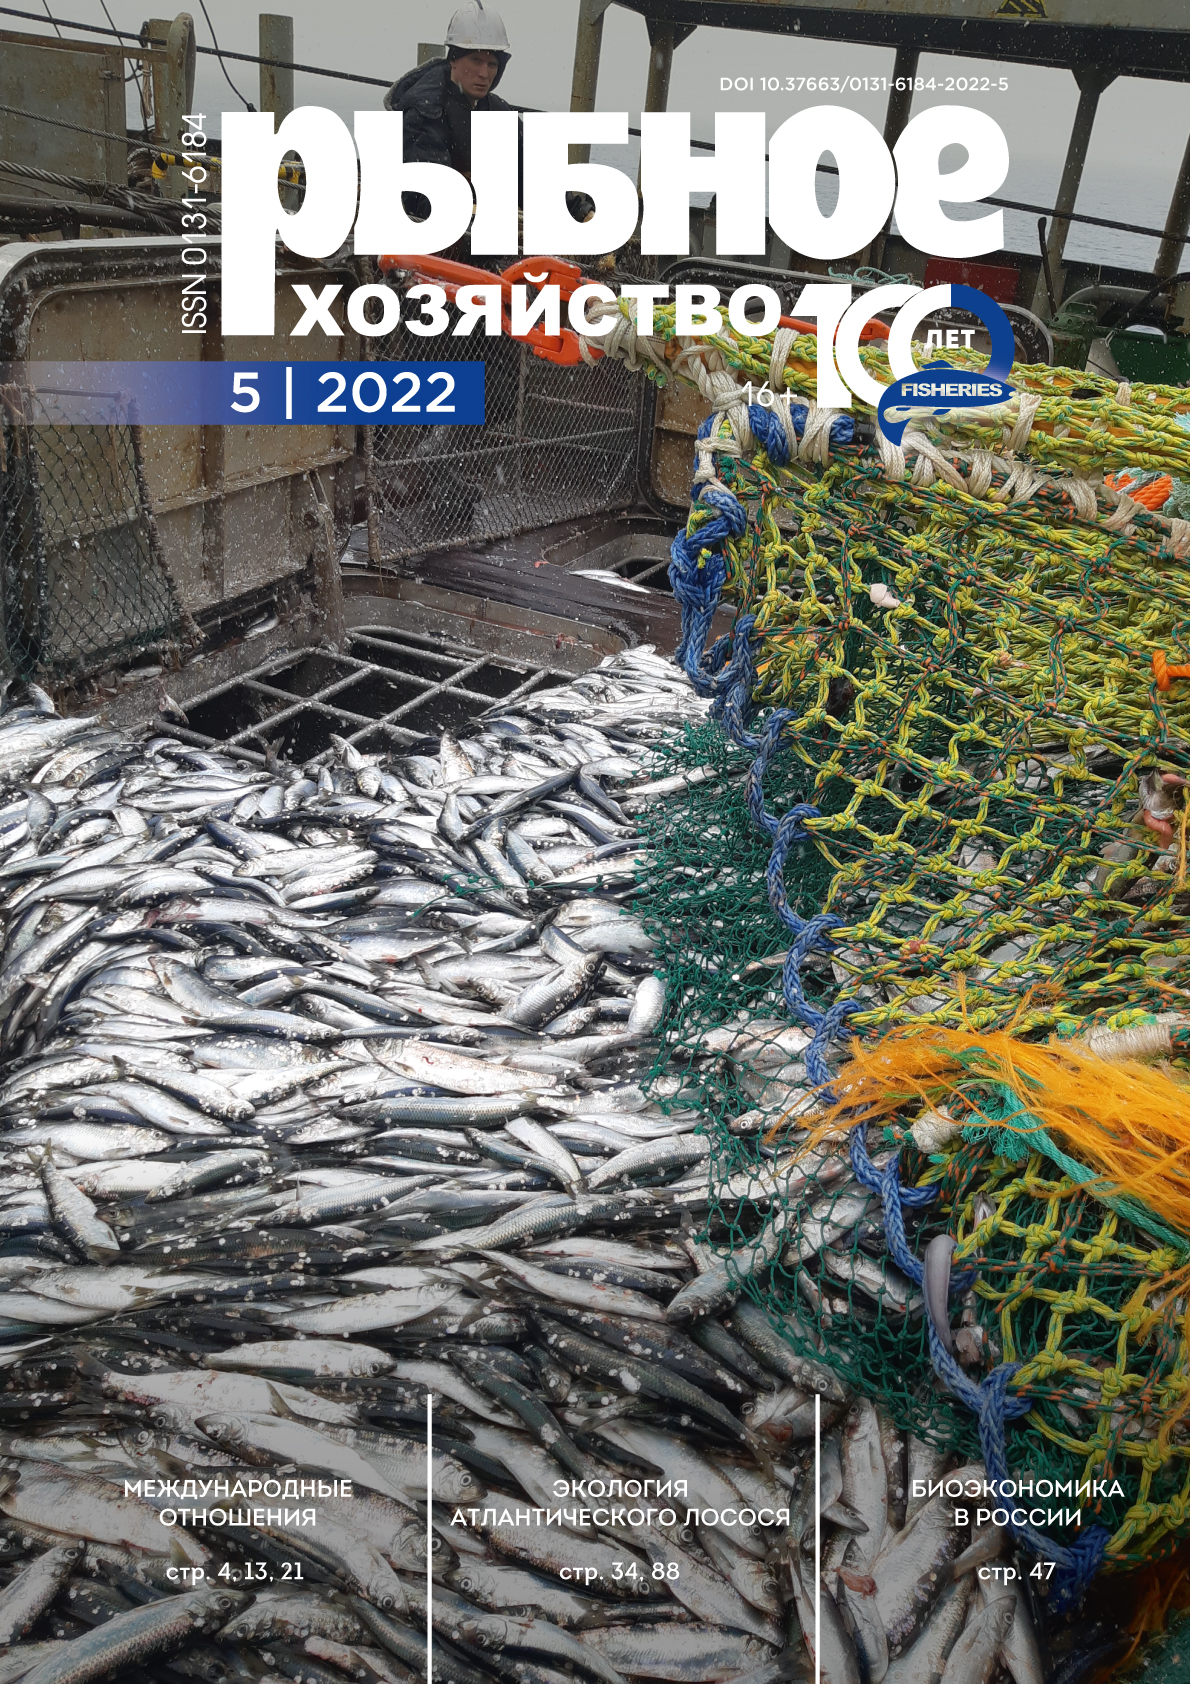             Антропогенное воздействие на популяции атлантического лосося (Salmo salar) в Арктическом бассейне Российской Федерации
    